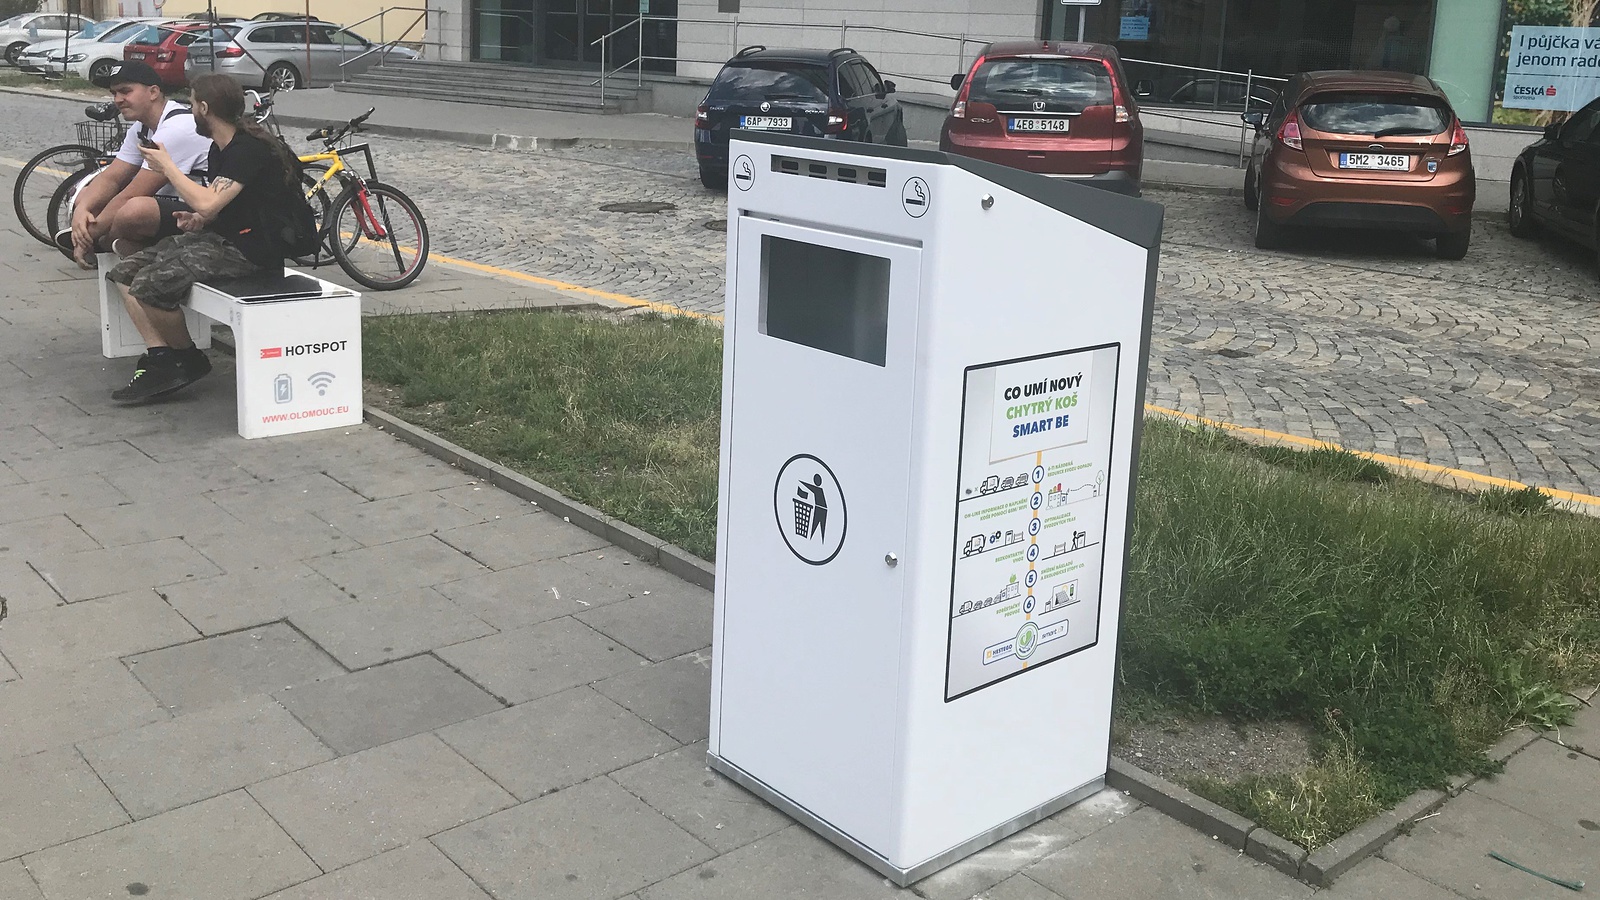 V Olomouci fungují "chytré koše" na odpadky. Co umí? - Olomoucký deník